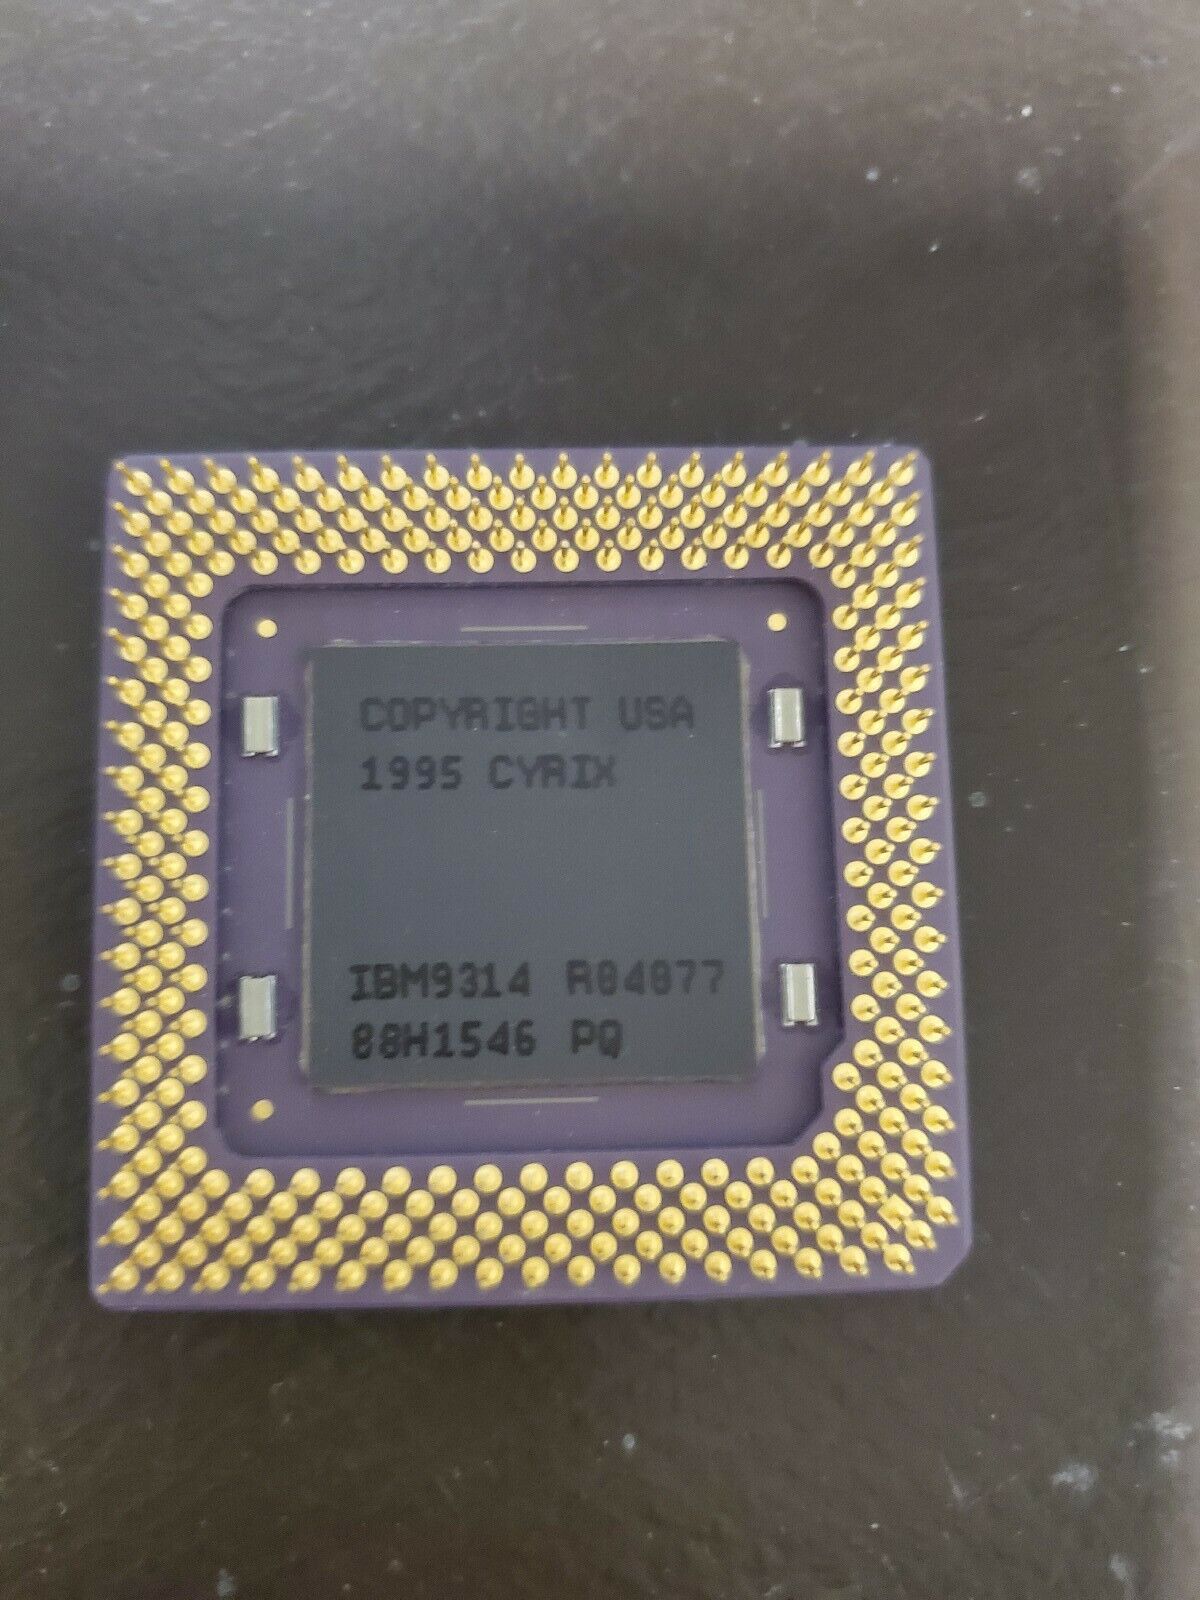 Cyrix 6x86 Microprocessor - (IBM,P166+,IBM26 6x86-2V2P166GE,133Mhz,3.3V